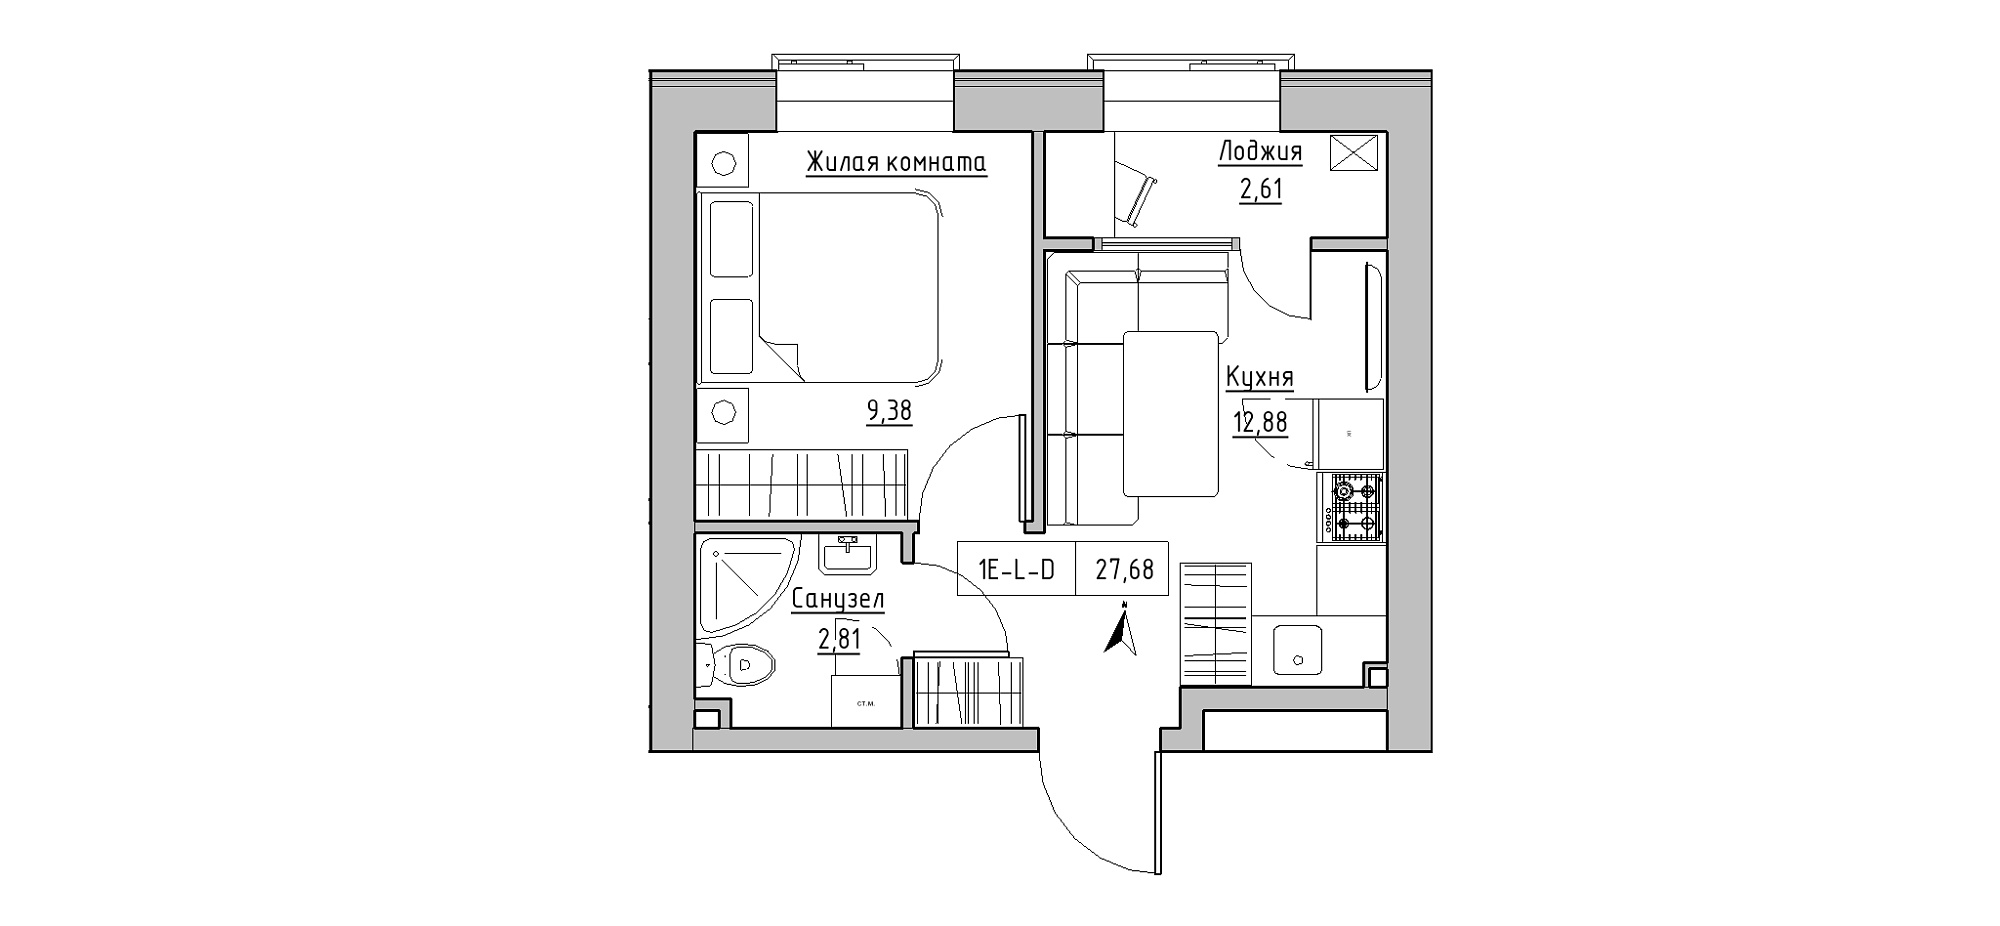 Планировка 1-к квартира площей 27.68м2, KS-020-03/0001.